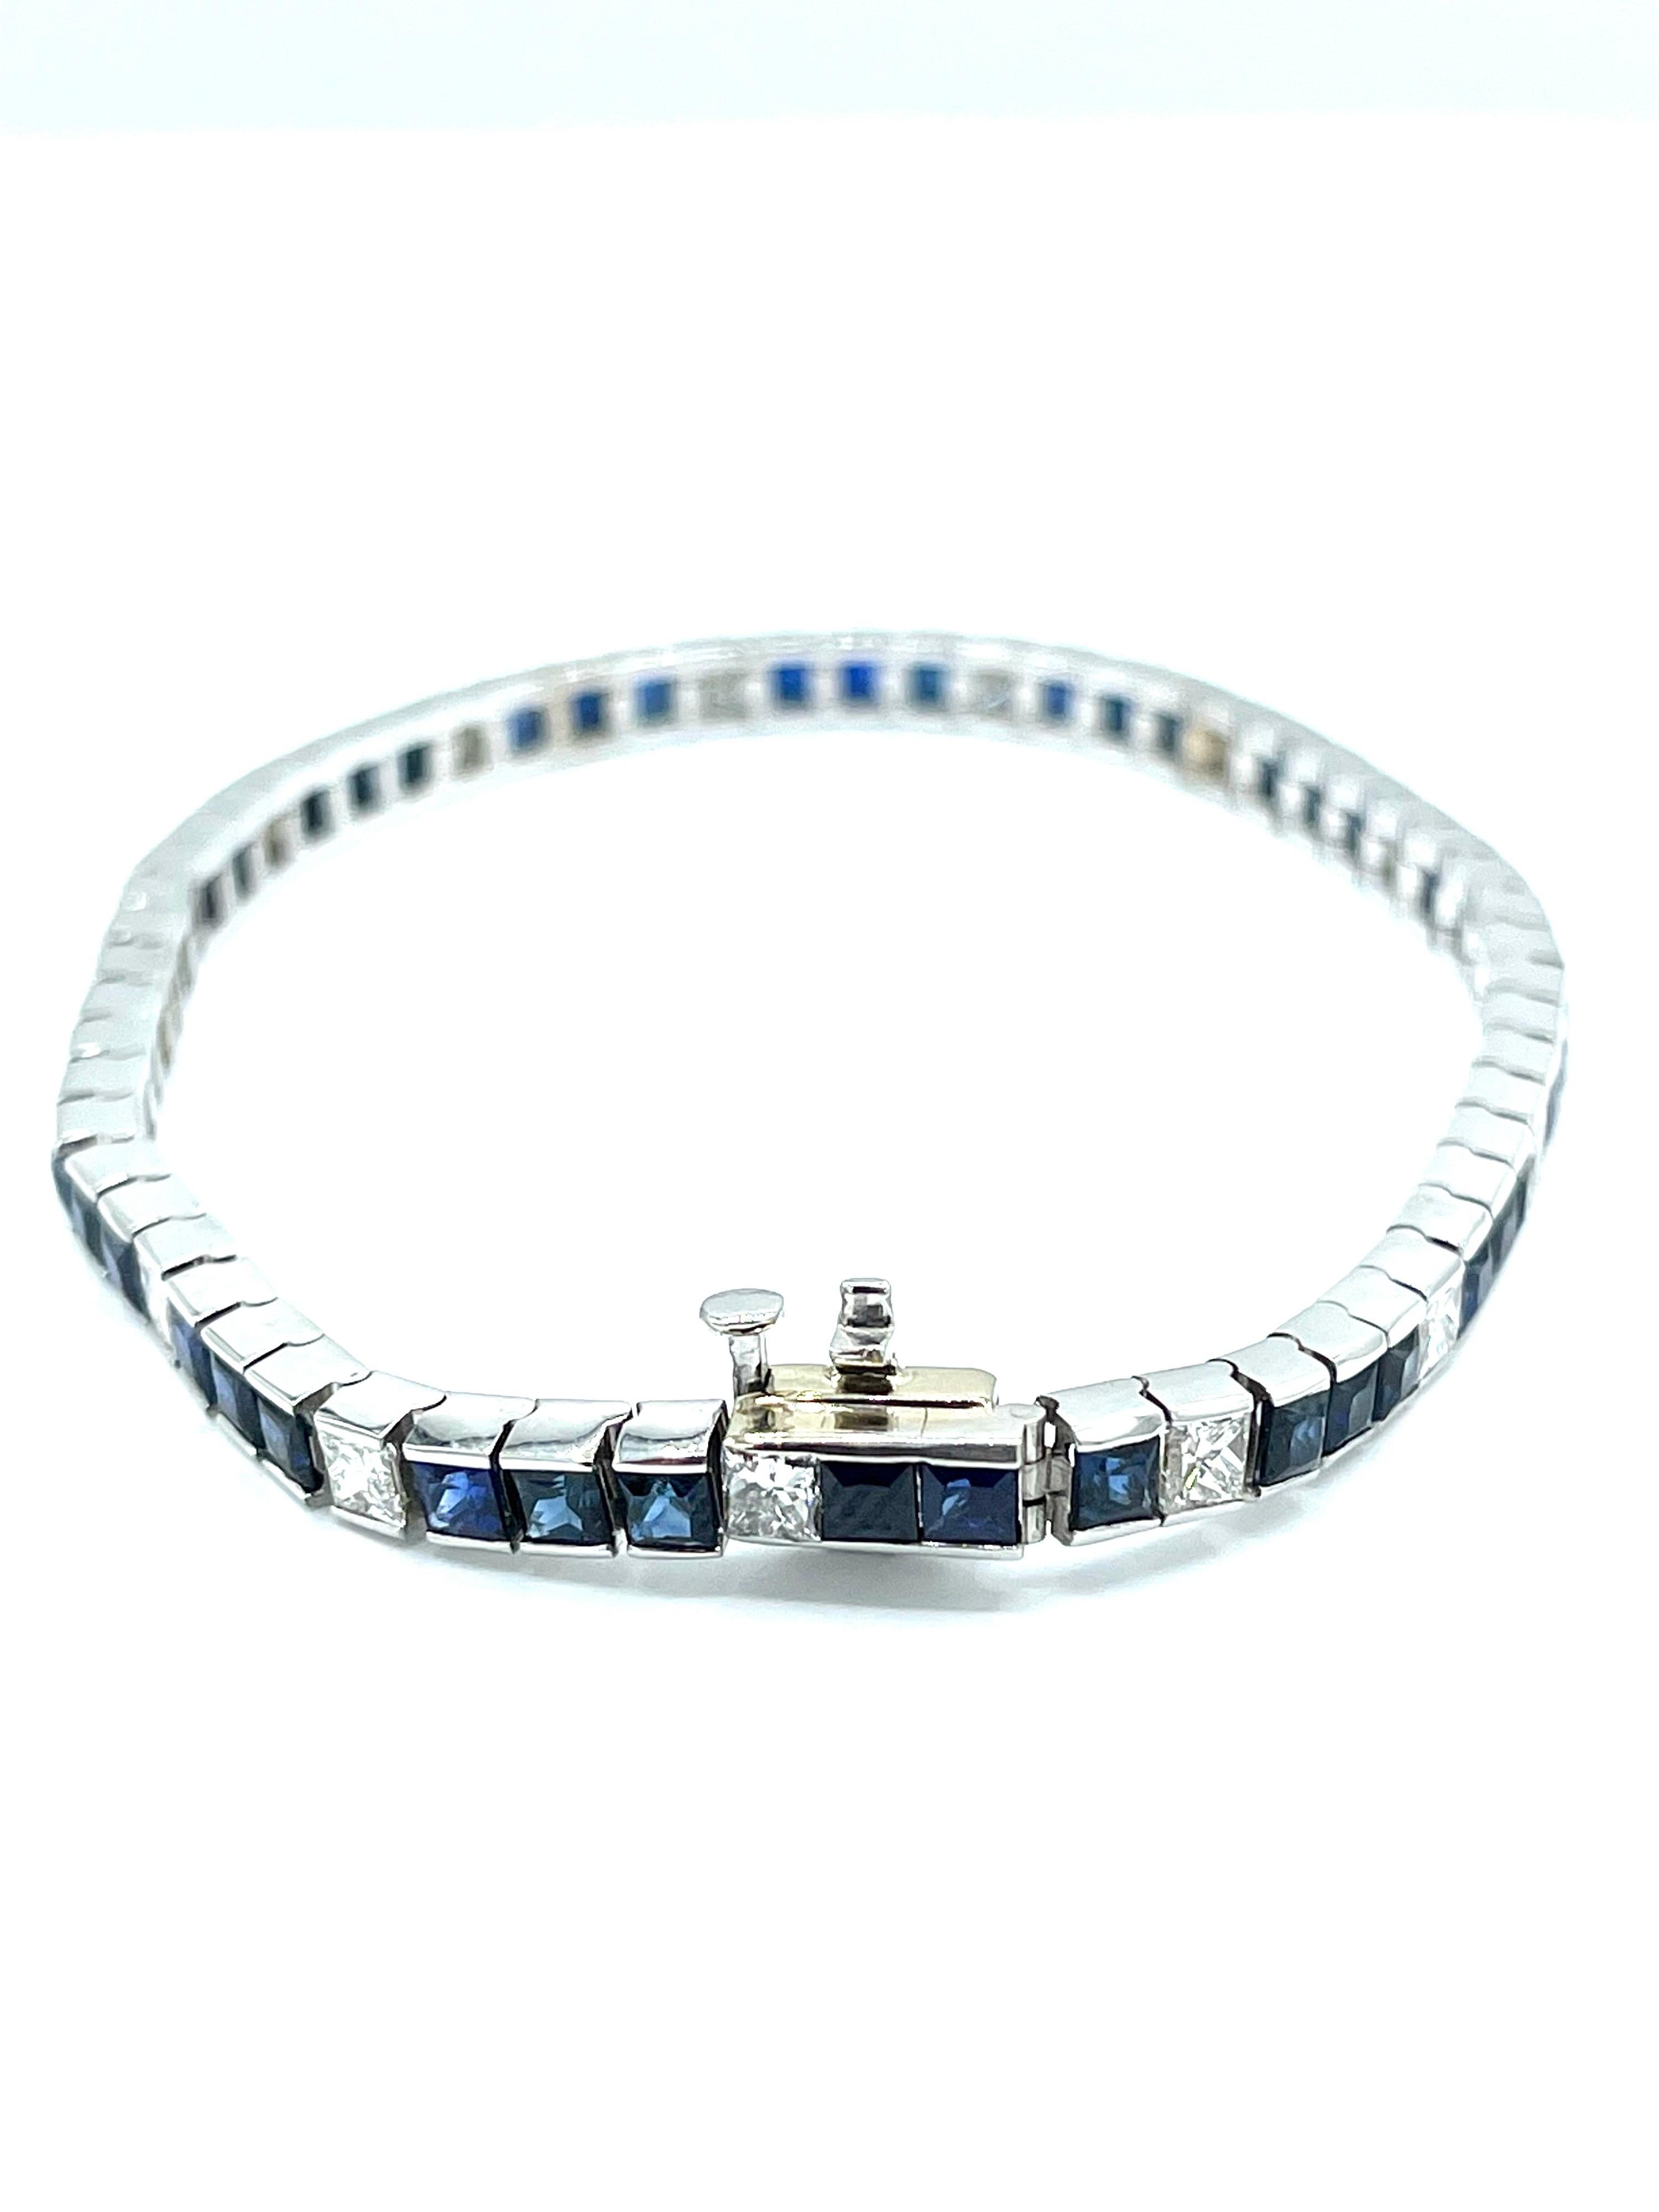 8.15 Carat Square Cut Sapphire & Princess Cut Diamond White Gold Bracelet For Sale 2